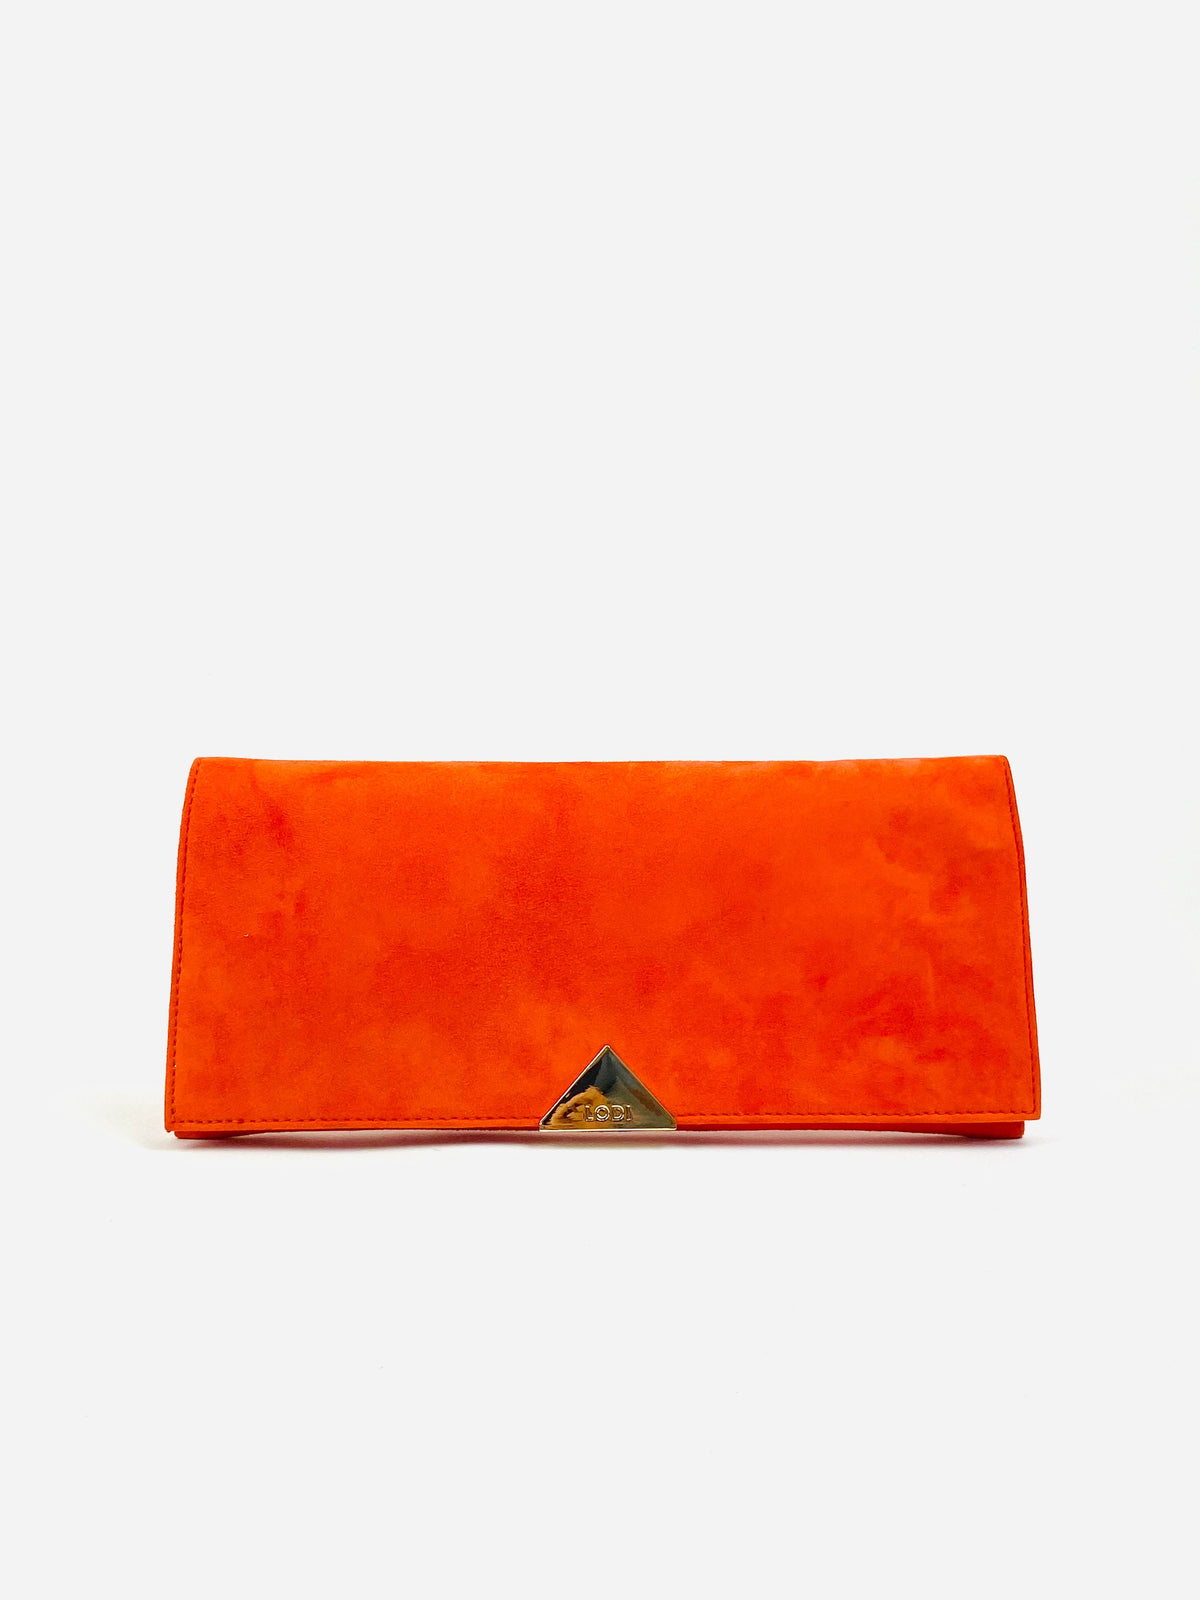 Lodi - Orange Clutch Bag*